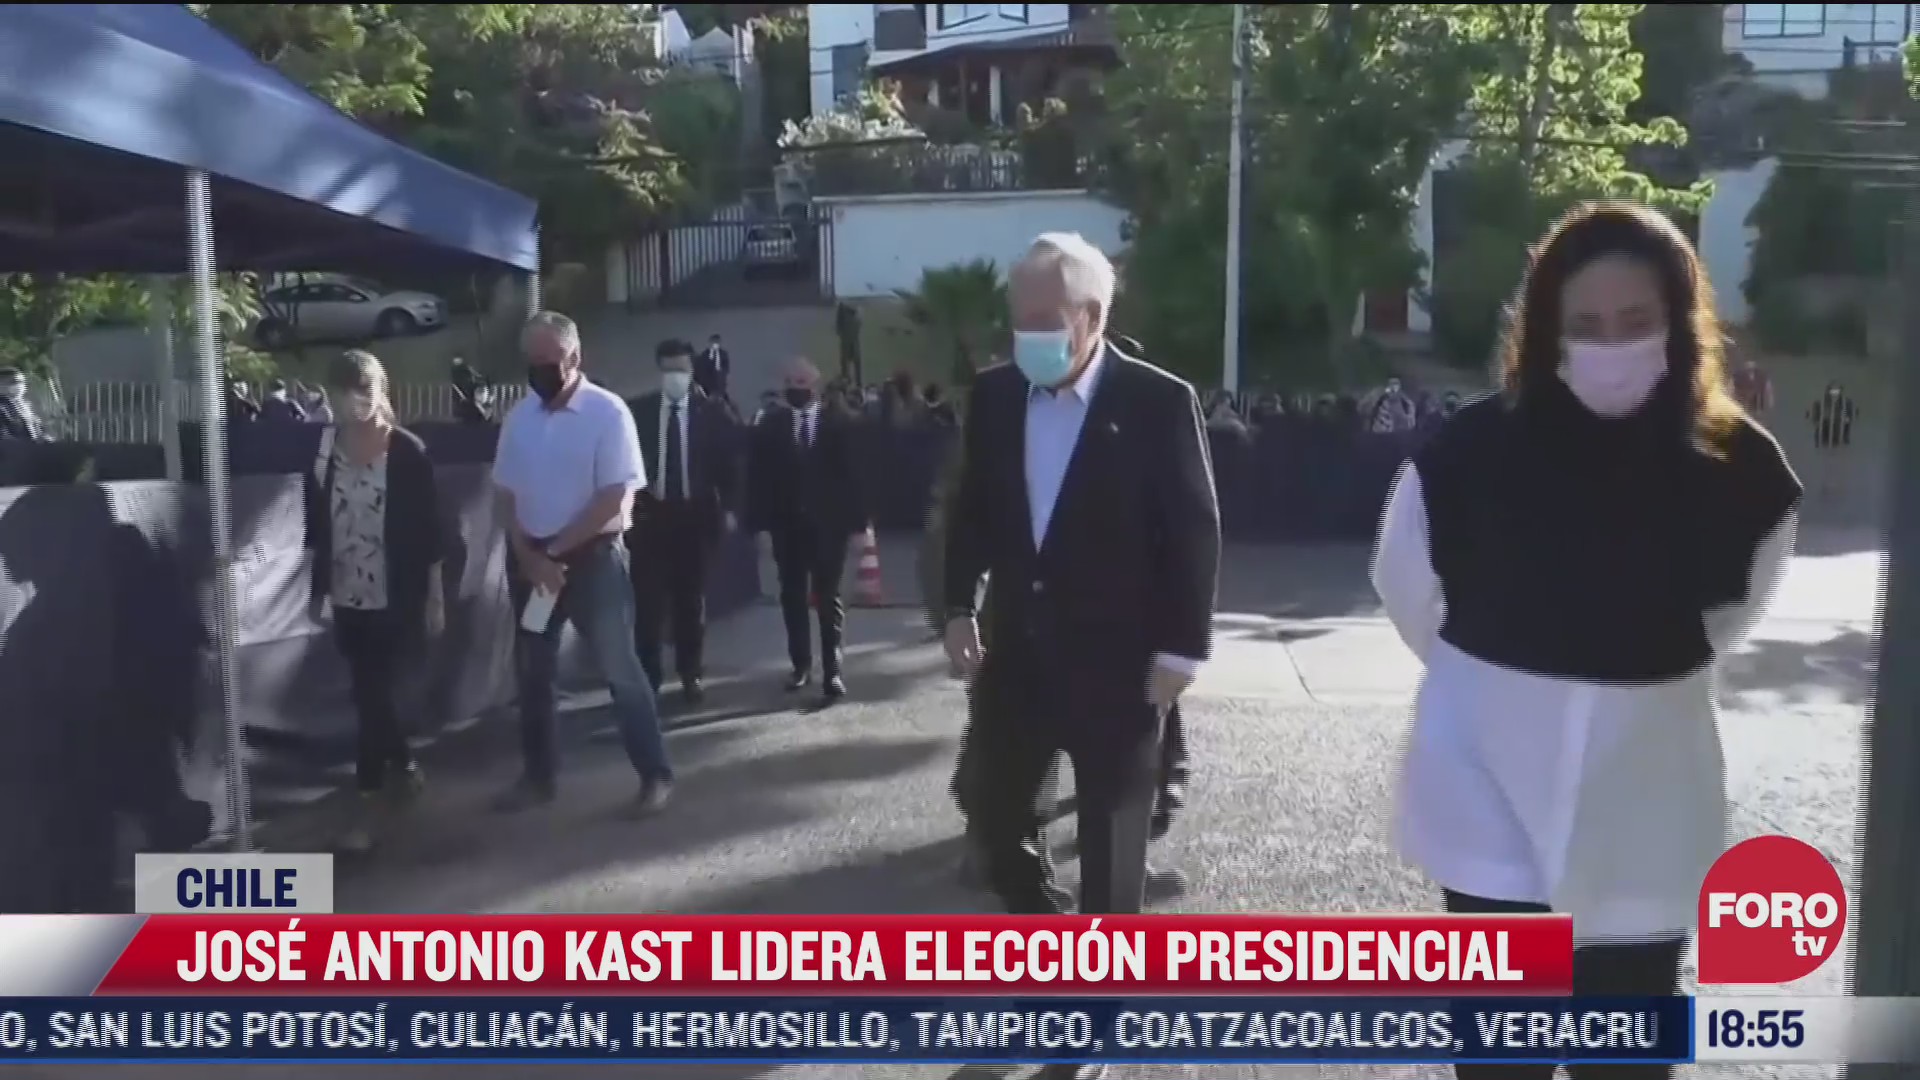 jose antonio kast lidera eleccion presidencial en chile